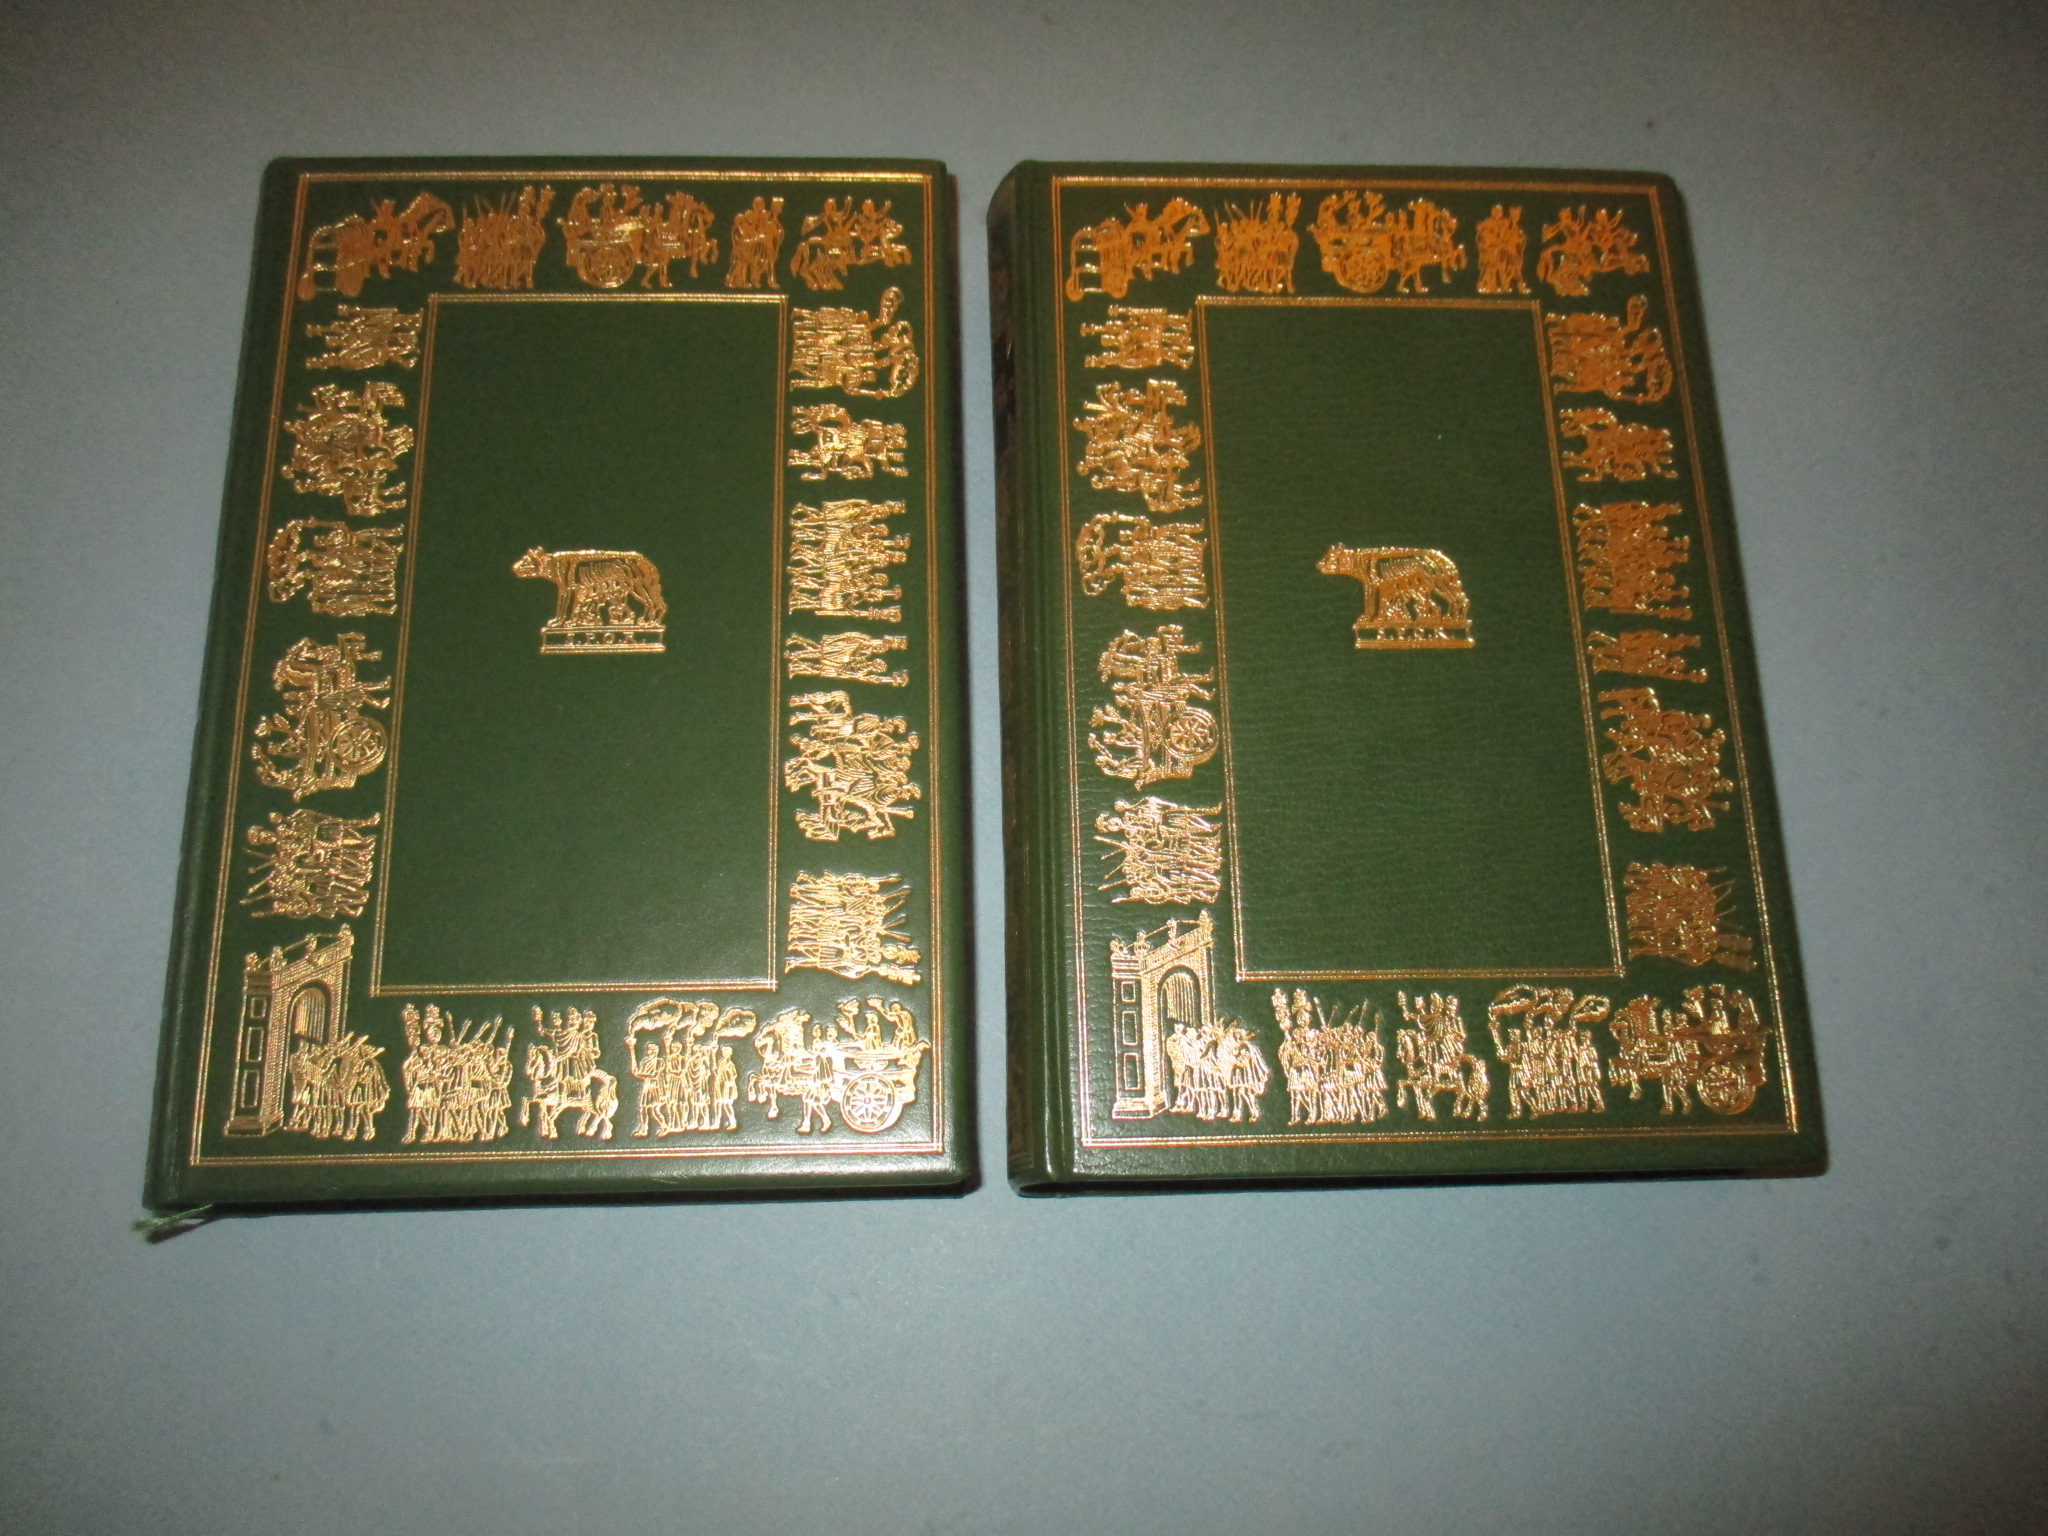 La Guerre des Gaules, César, 2 volumes, Jean de Bonnot 1970